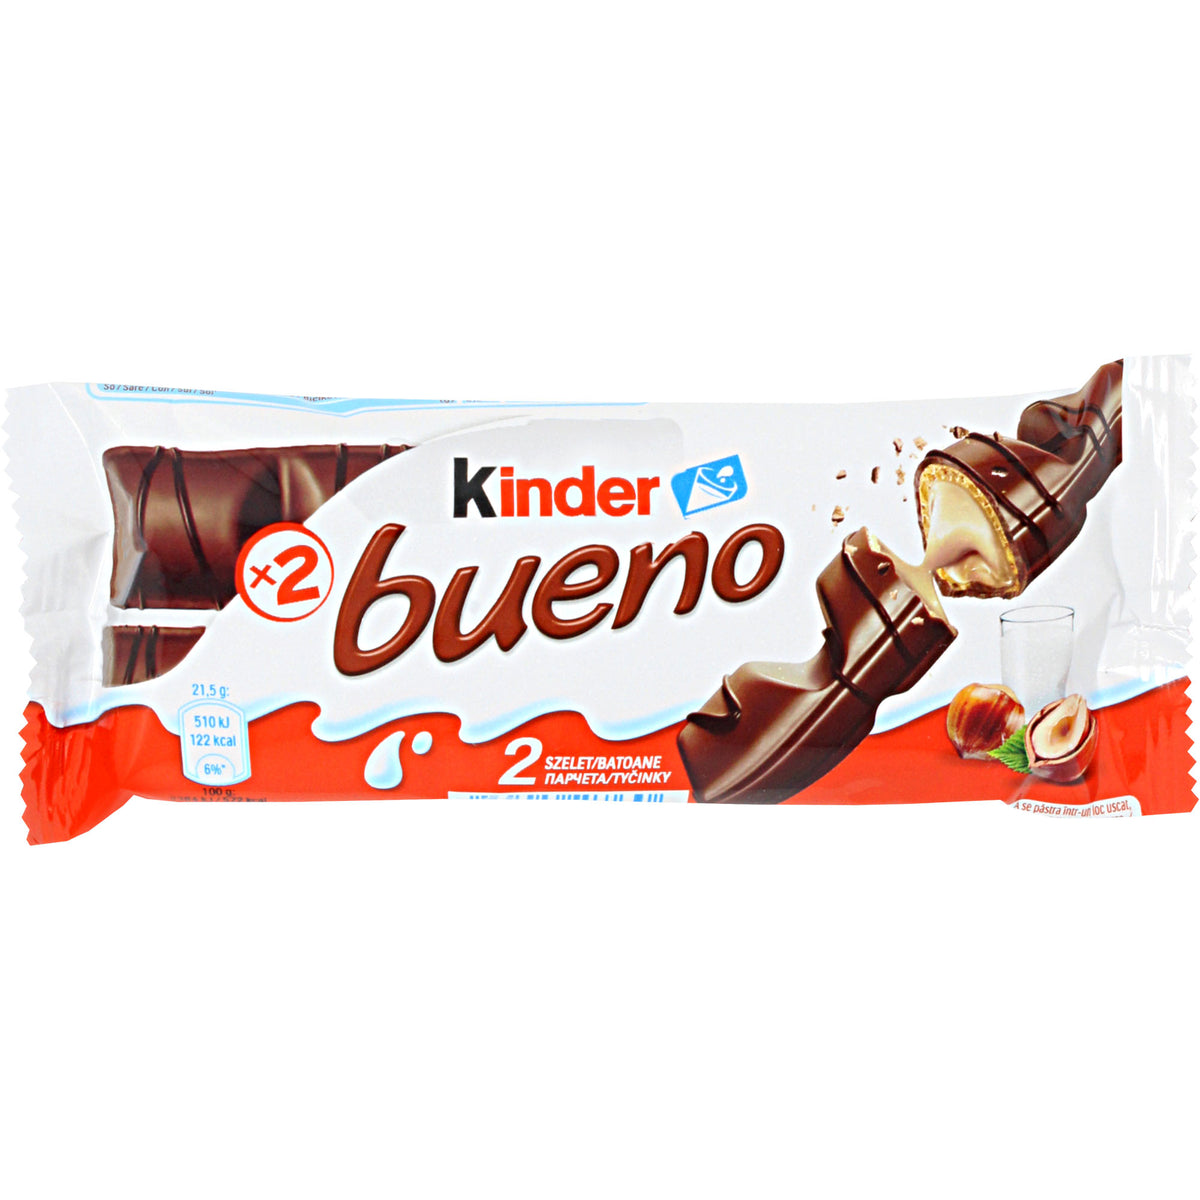 Kinder Bueno + Ferrero Rocher, αsǿм the Queen